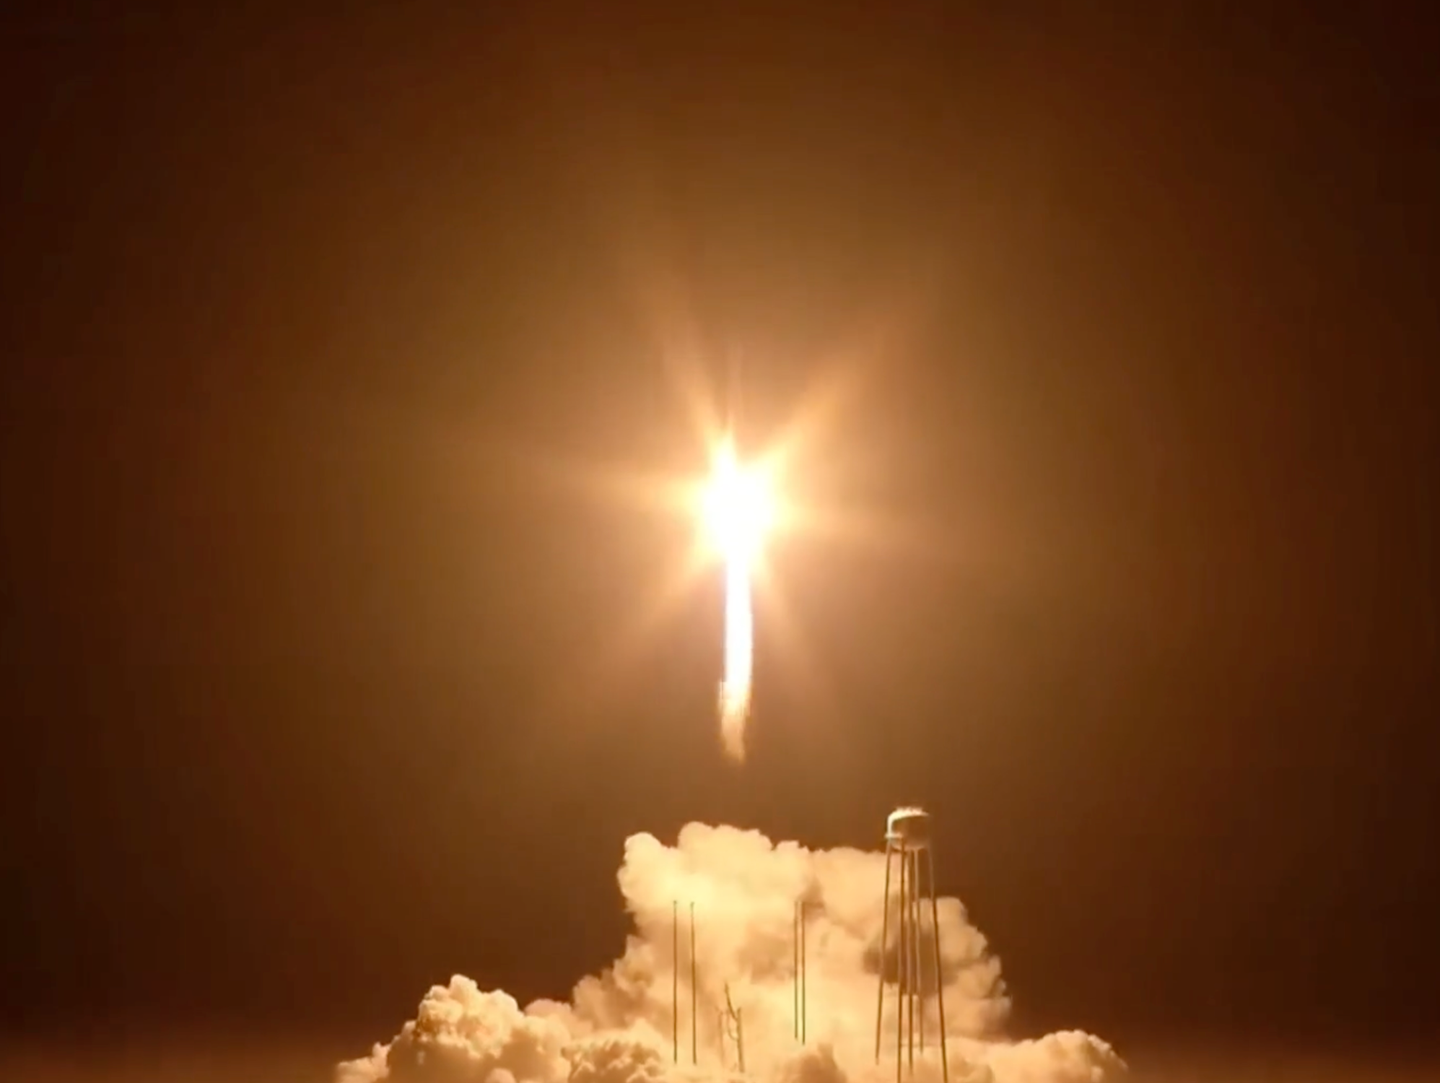 Northrop Grumman NASA Anatares rocket launch at night